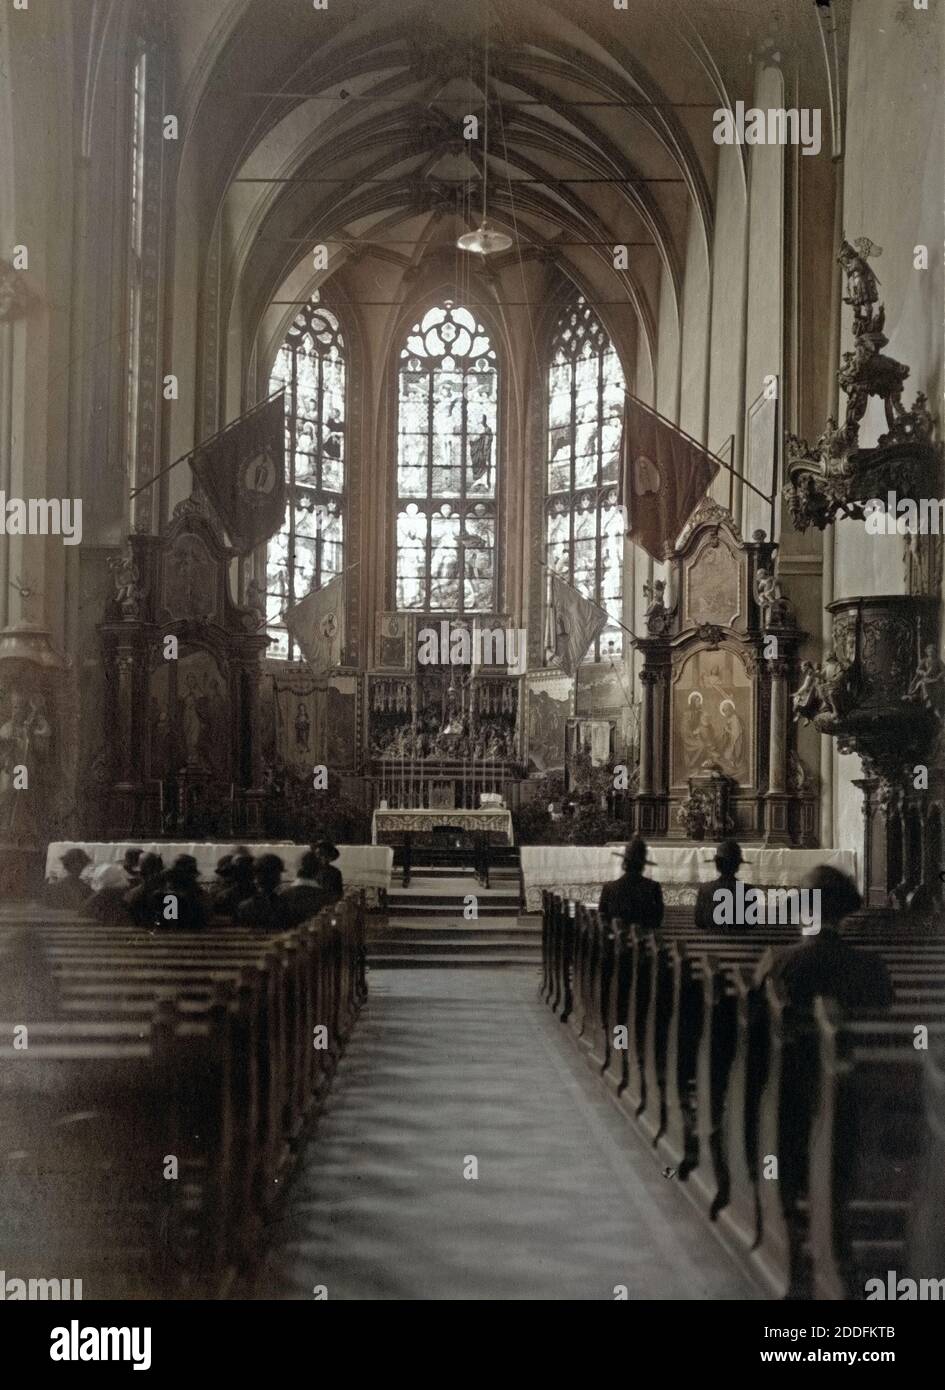 Im Inneren der Marienwallfahrtskirche in Klausen an der Mosel, Deutschland 1930er Jahre. Inside St. Mary's pilgrimage church at Klausen on river Moselle, Germany 1930s. Stock Photo